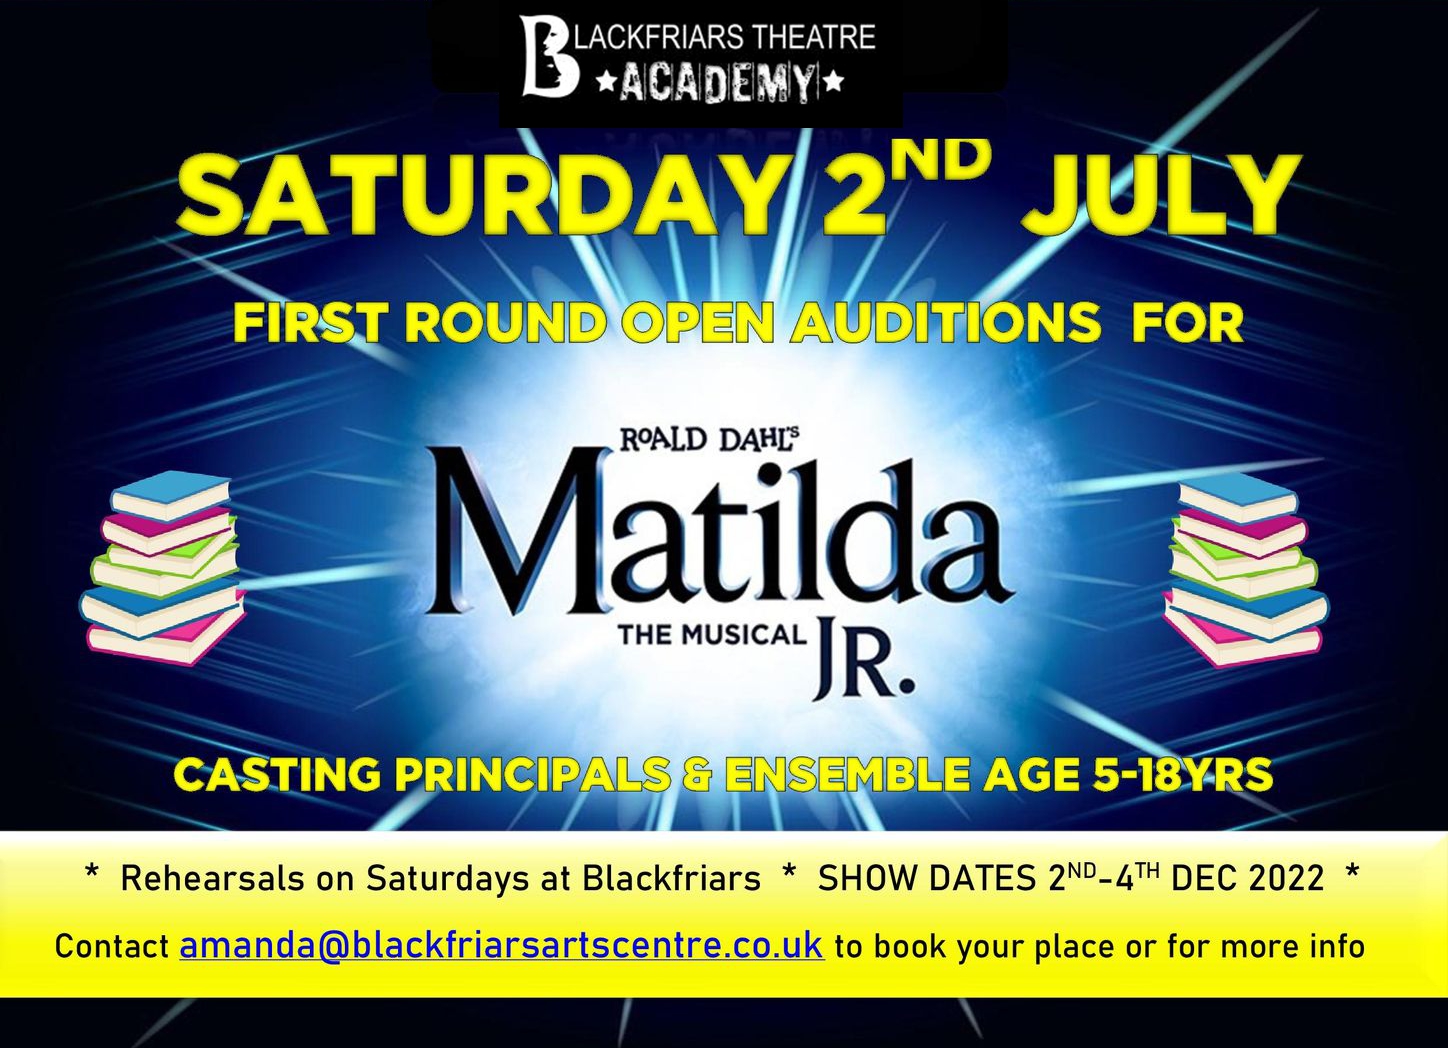 OPEN AUDITIONS - Roald Dahl's Matilda the Musical Jr.